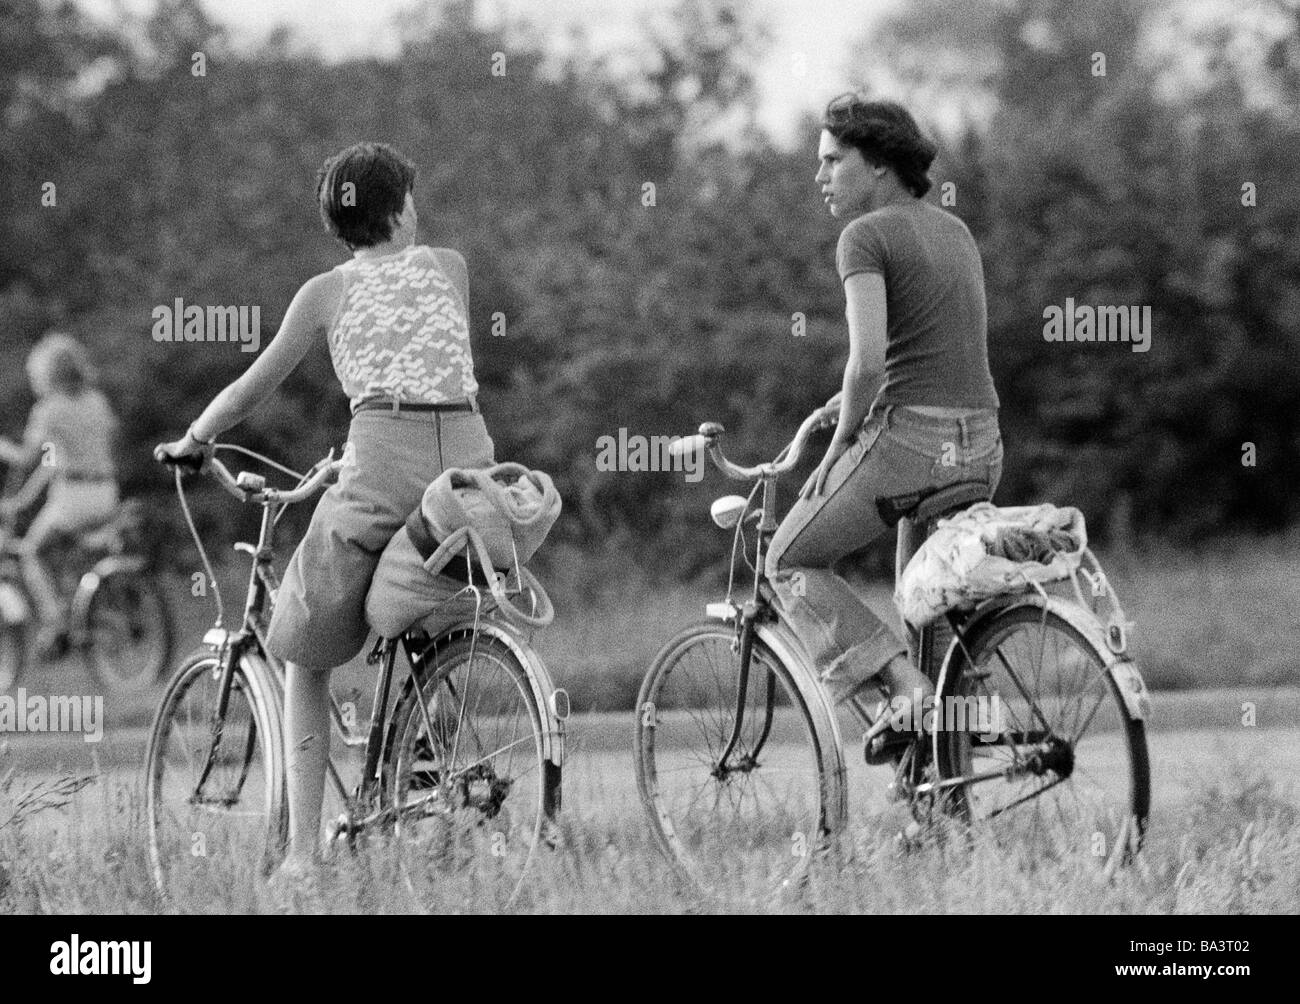 70er Jahre, schwarz / weiß Foto, Menschen, zwei junge Mädchen auf Fahrrädern machen eine Vergnügungsreise, Utensilien am Koffer Rack, Stiefel, Rock, Jeans Hosen, im Alter von 18 bis 22 Jahre Stockfoto